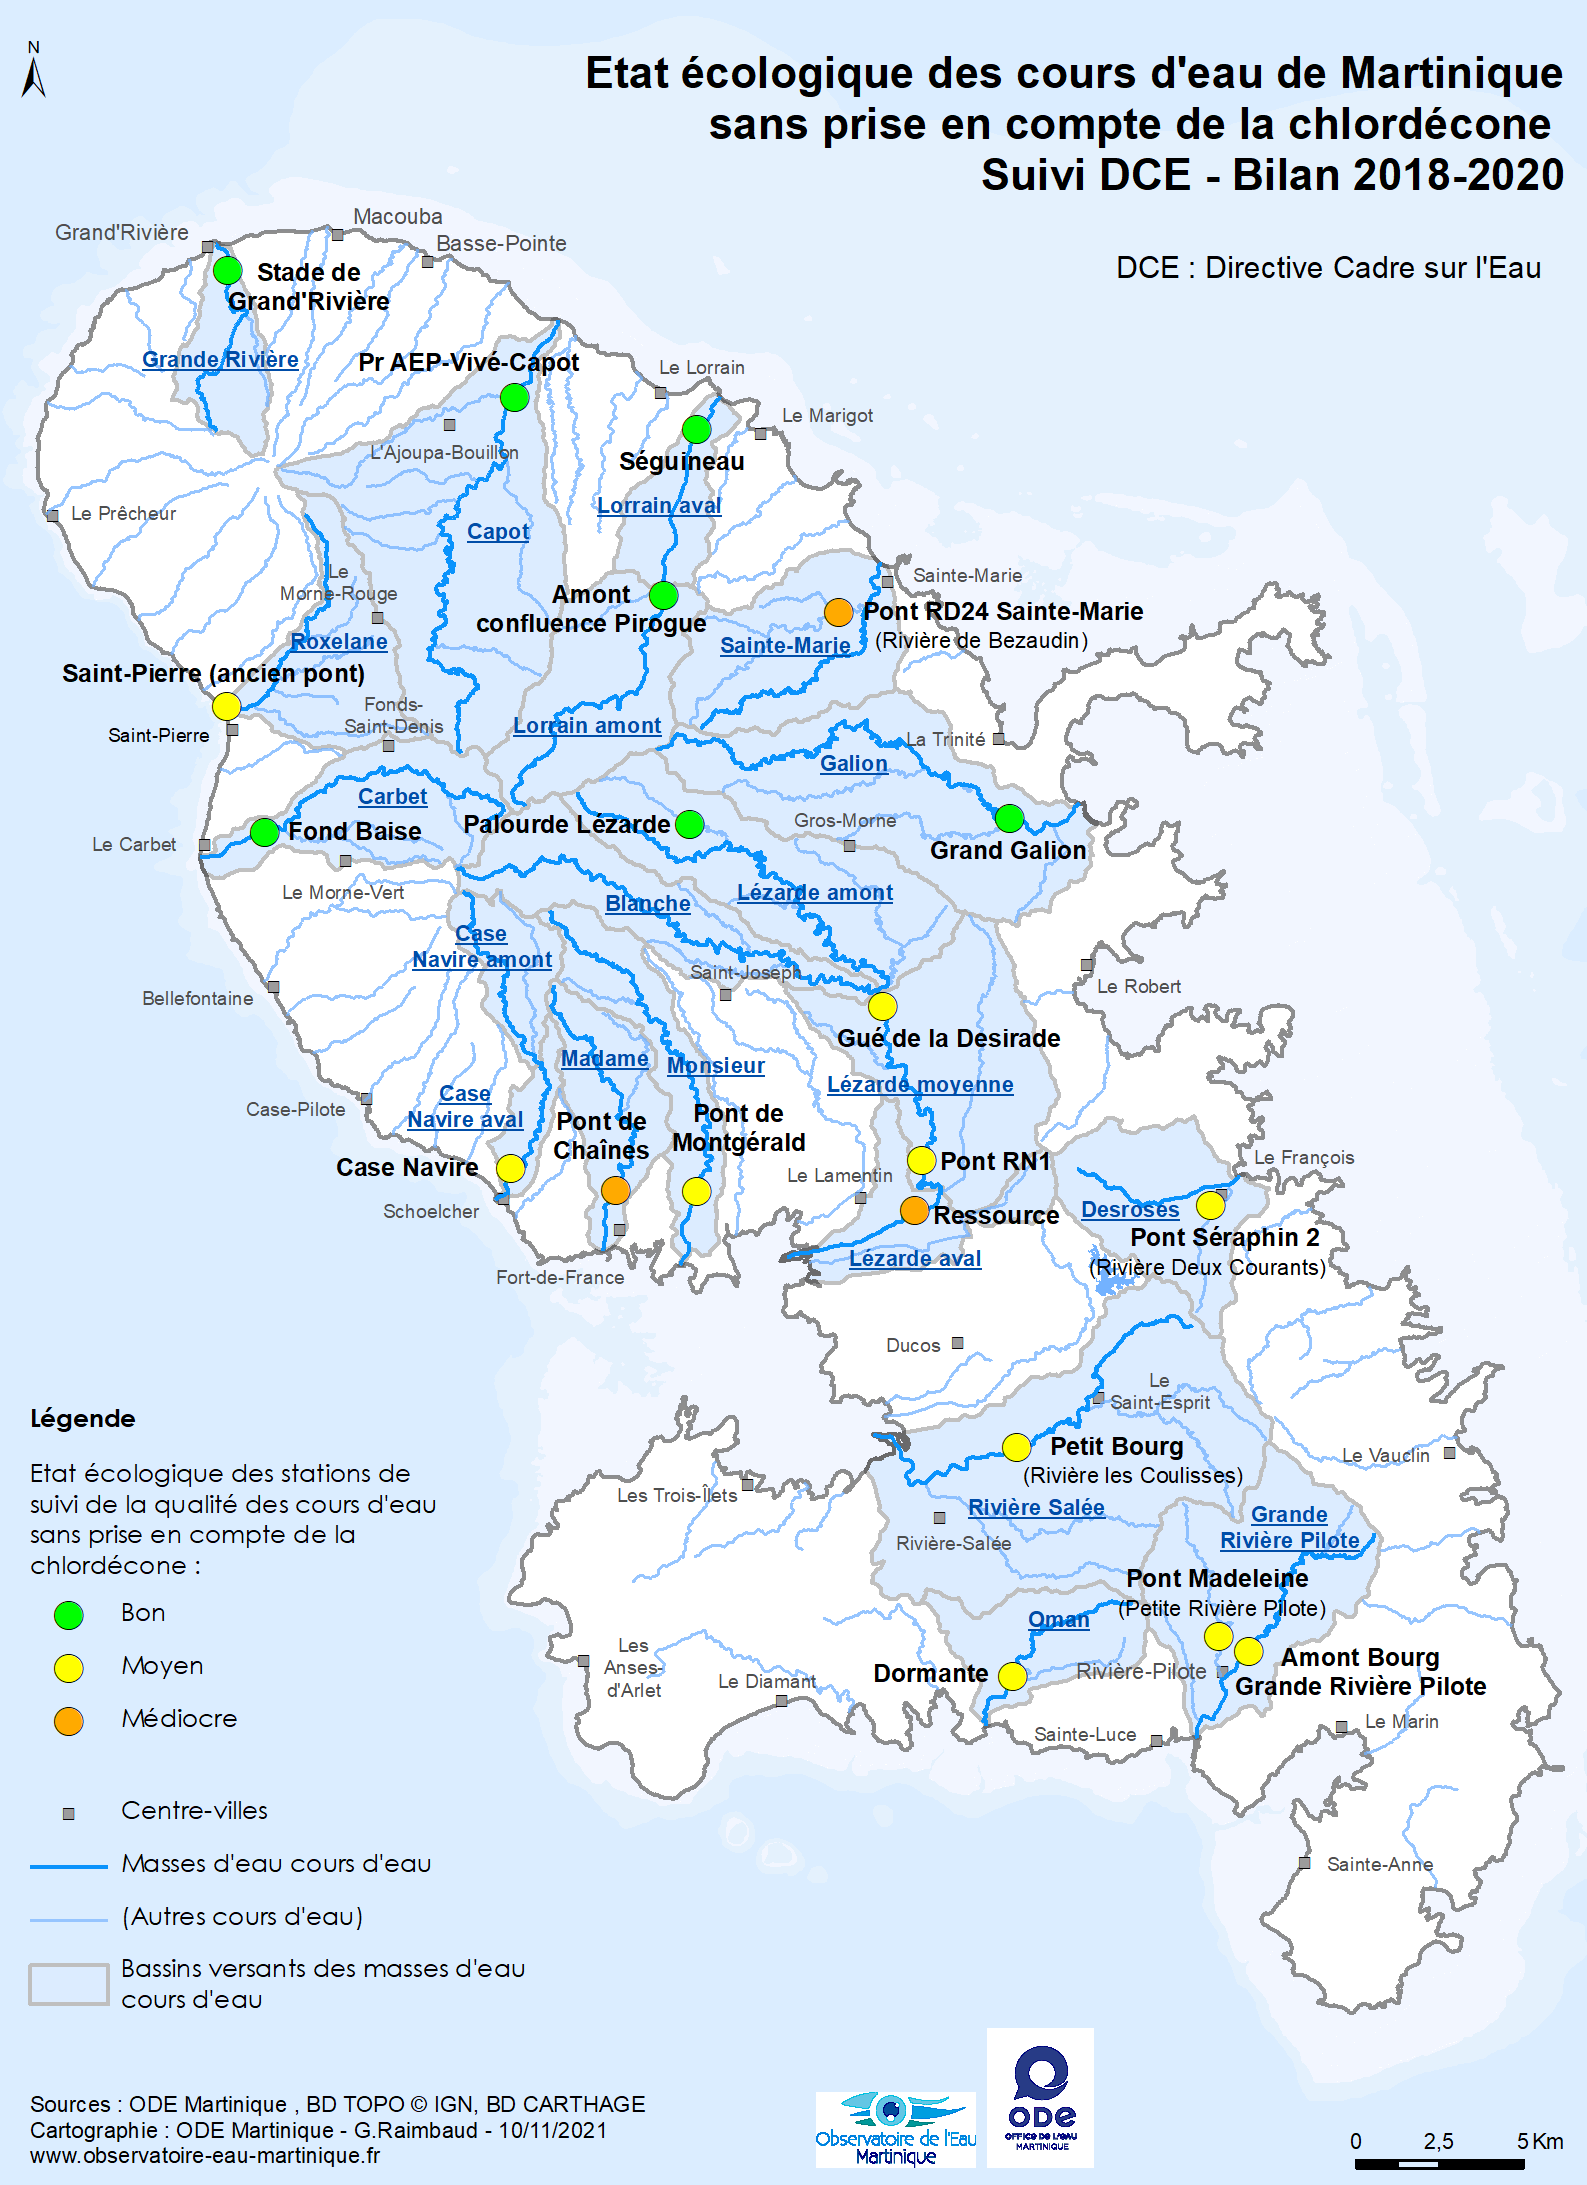 Etat écologique des cours d'eau de Martinique sans prise en compte de la chlordécone - Suivi DCE - Bilan 2018-2020